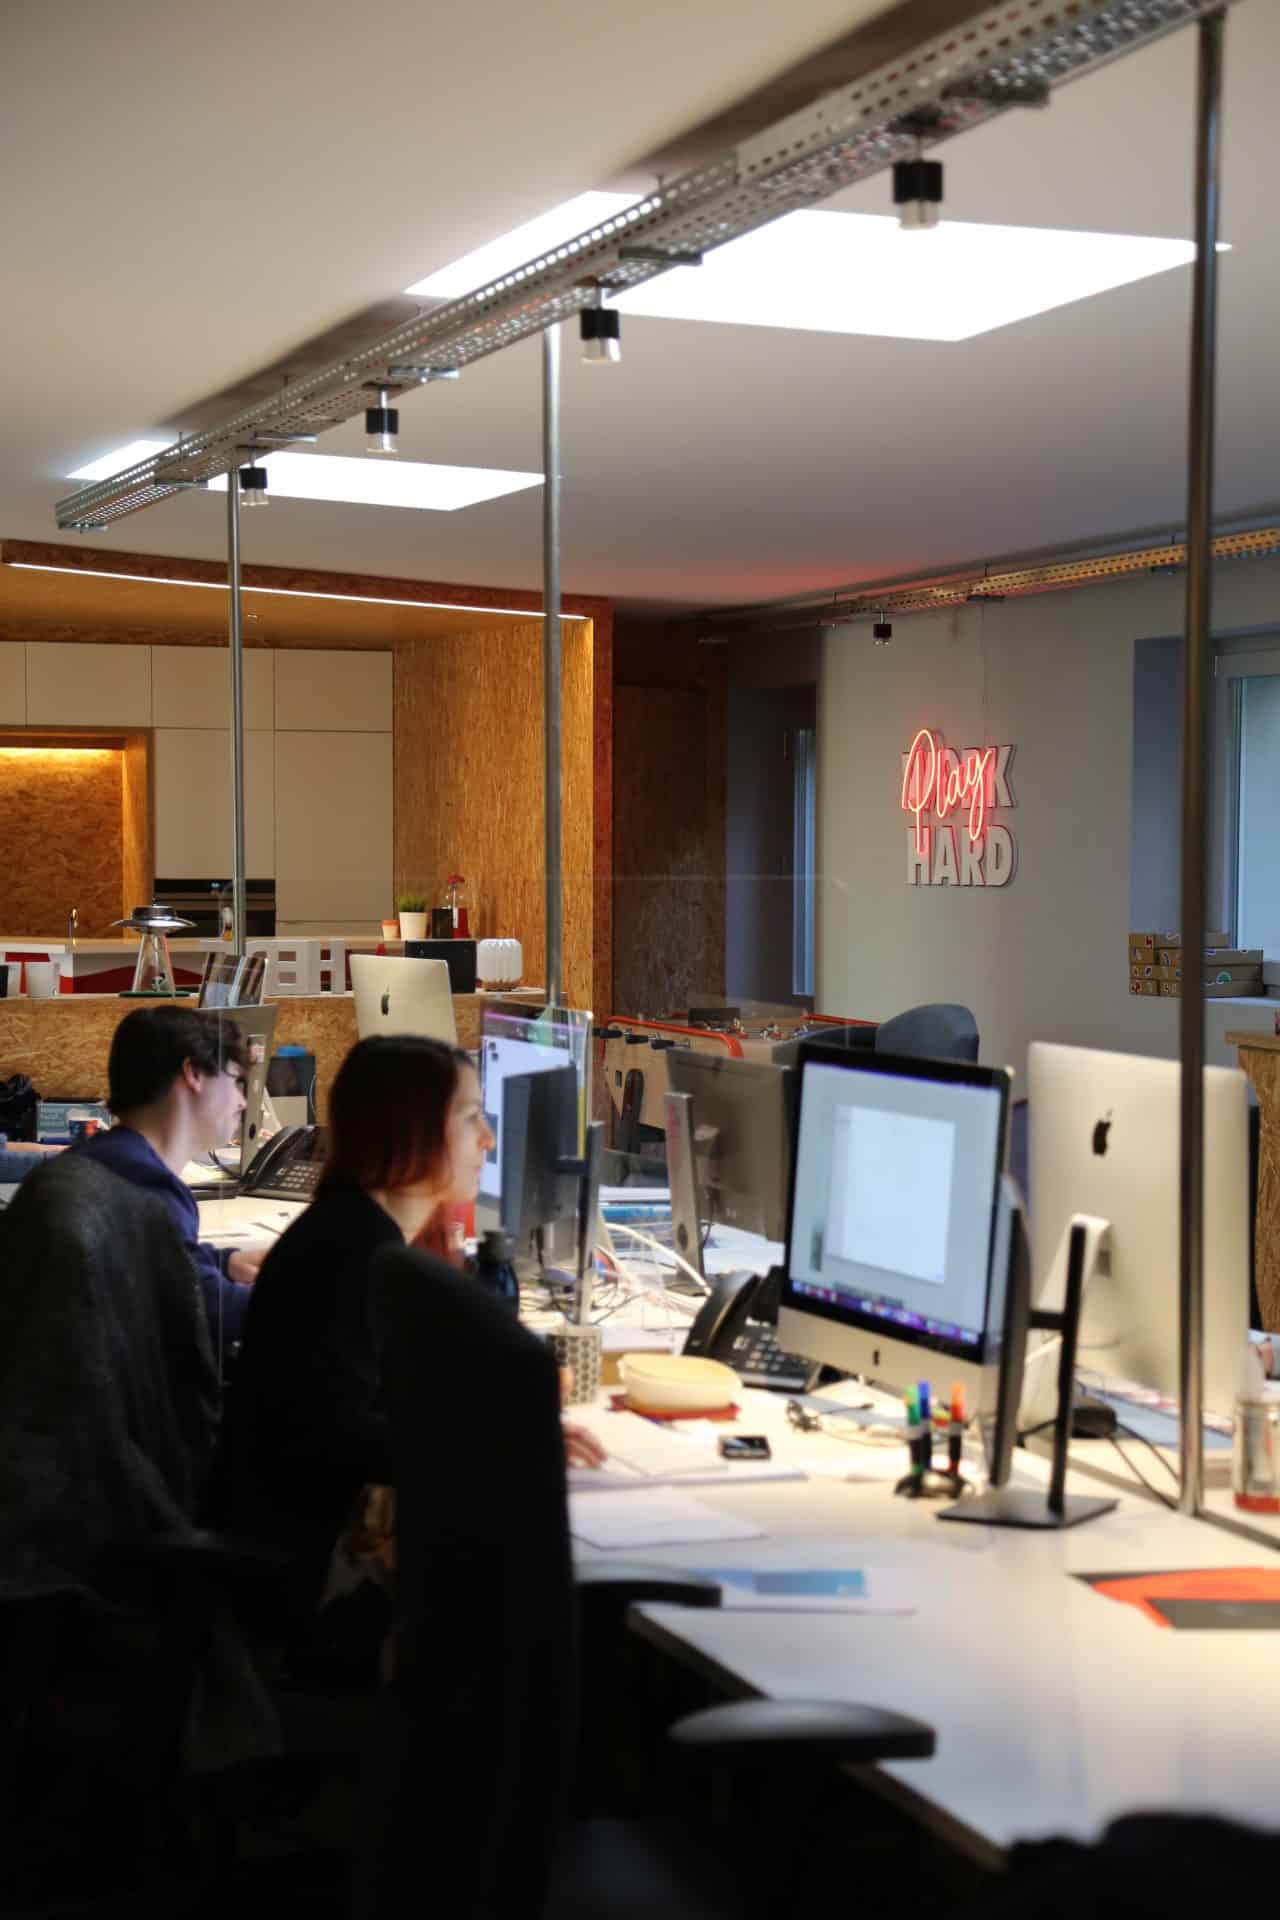 Des employés de l'agence h2a travaillant dans un bureau moderne et lumineux. Plusieurs personnes sont assises devant des ordinateurs iMac, concentrées sur leur travail. Le bureau est divisé par des cloisons en verre, et on peut voir un panneau néon au fond indiquant 